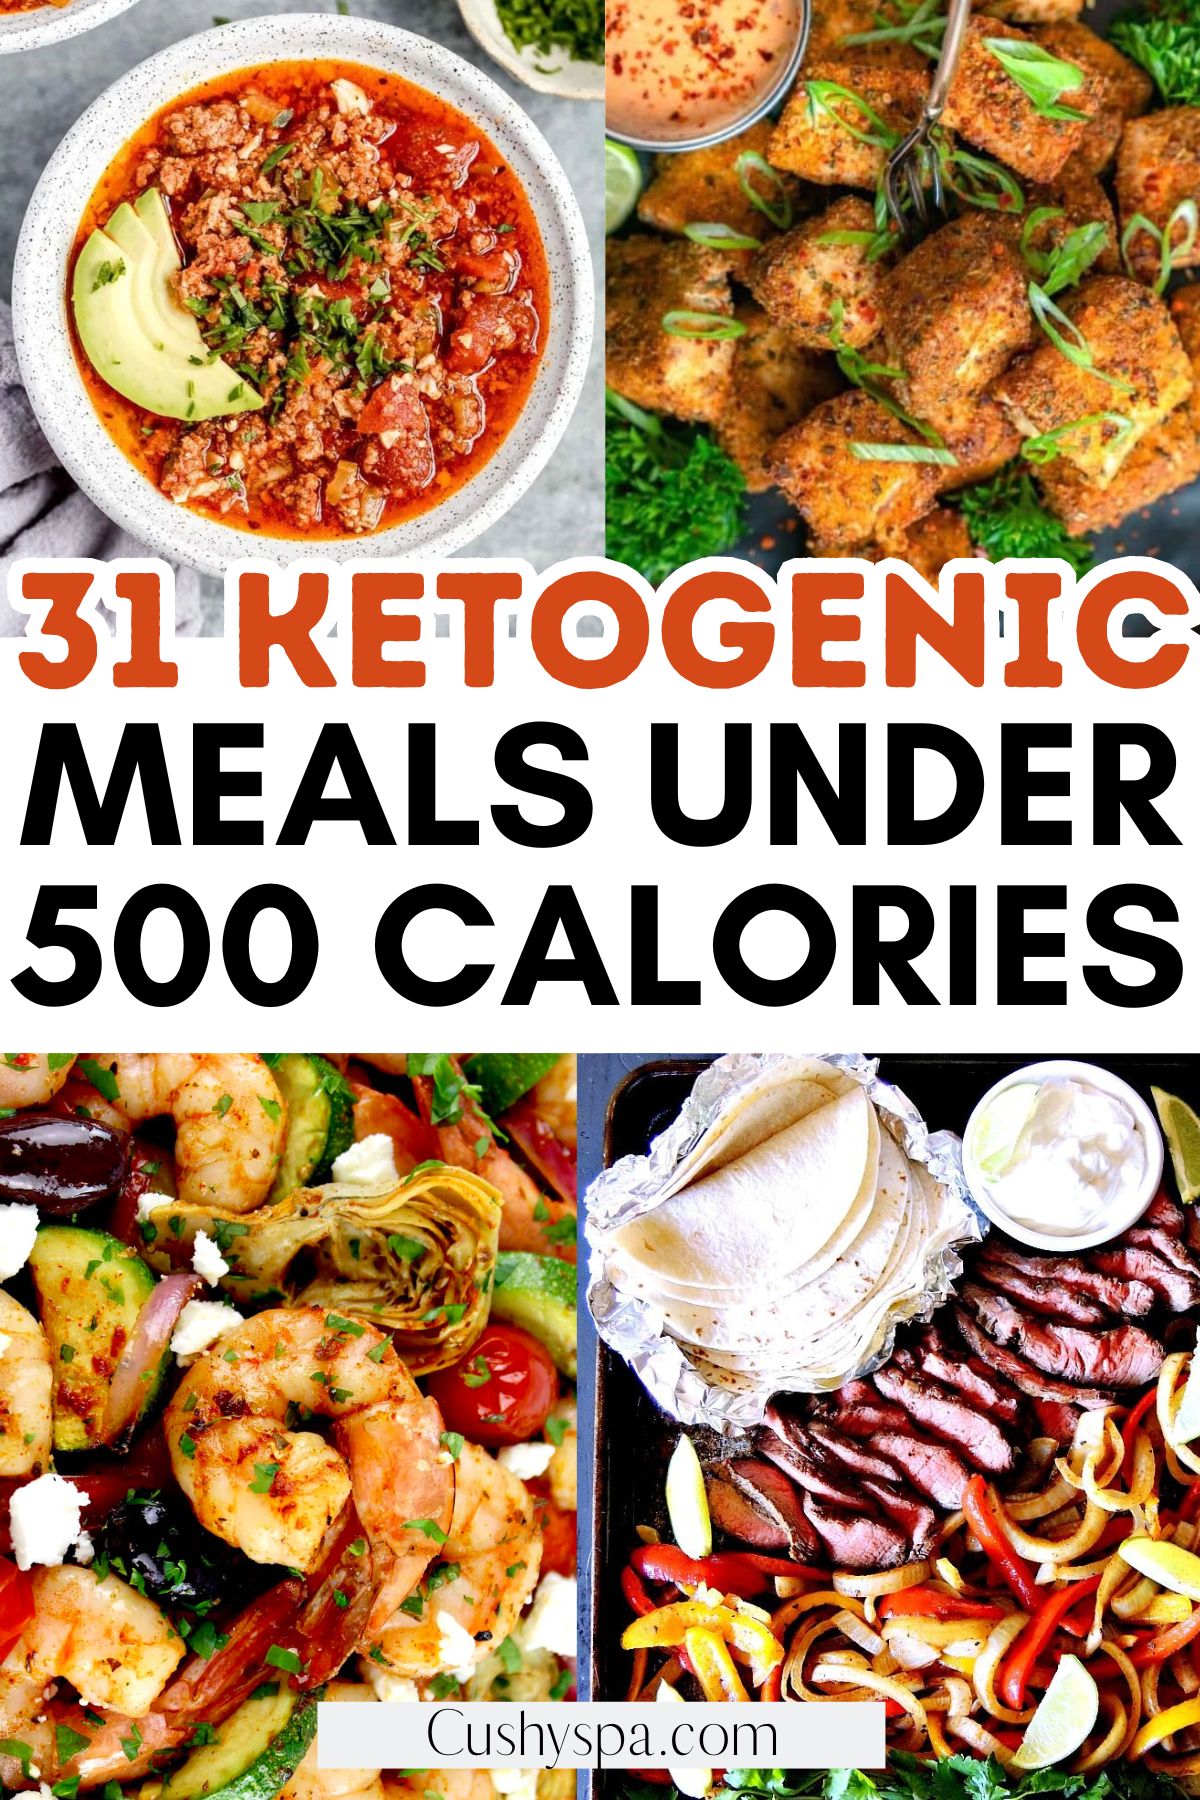 keto recipes under 500 calories